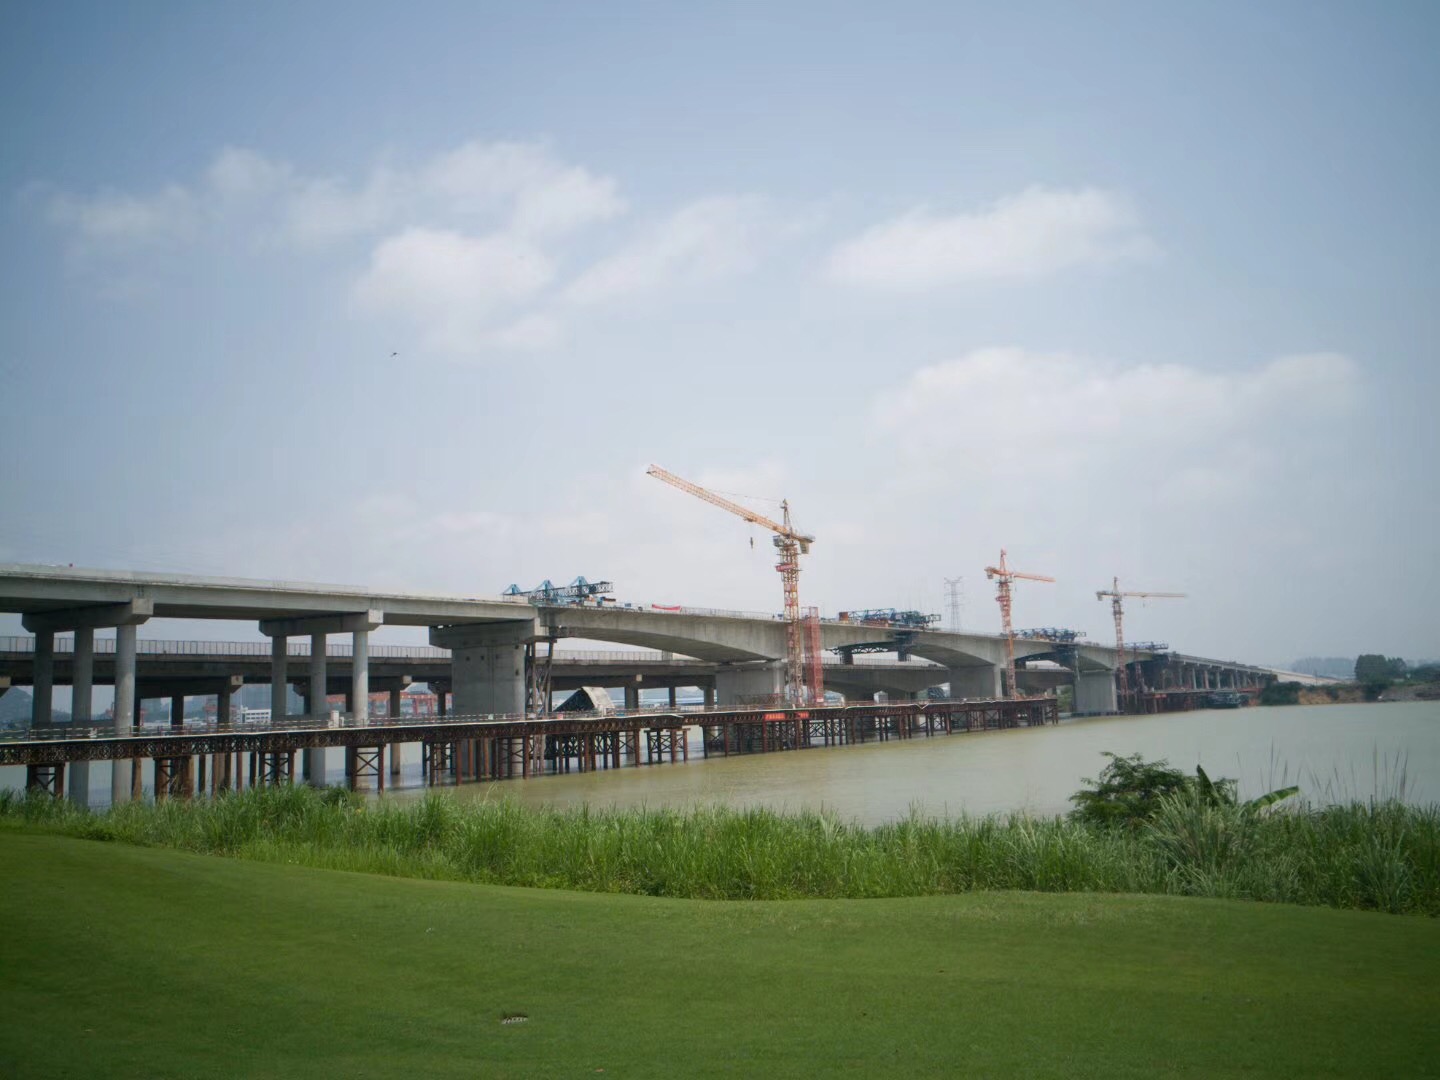 八桂监理公司监理的柳南高速公路改扩建工程络维大桥实现合龙